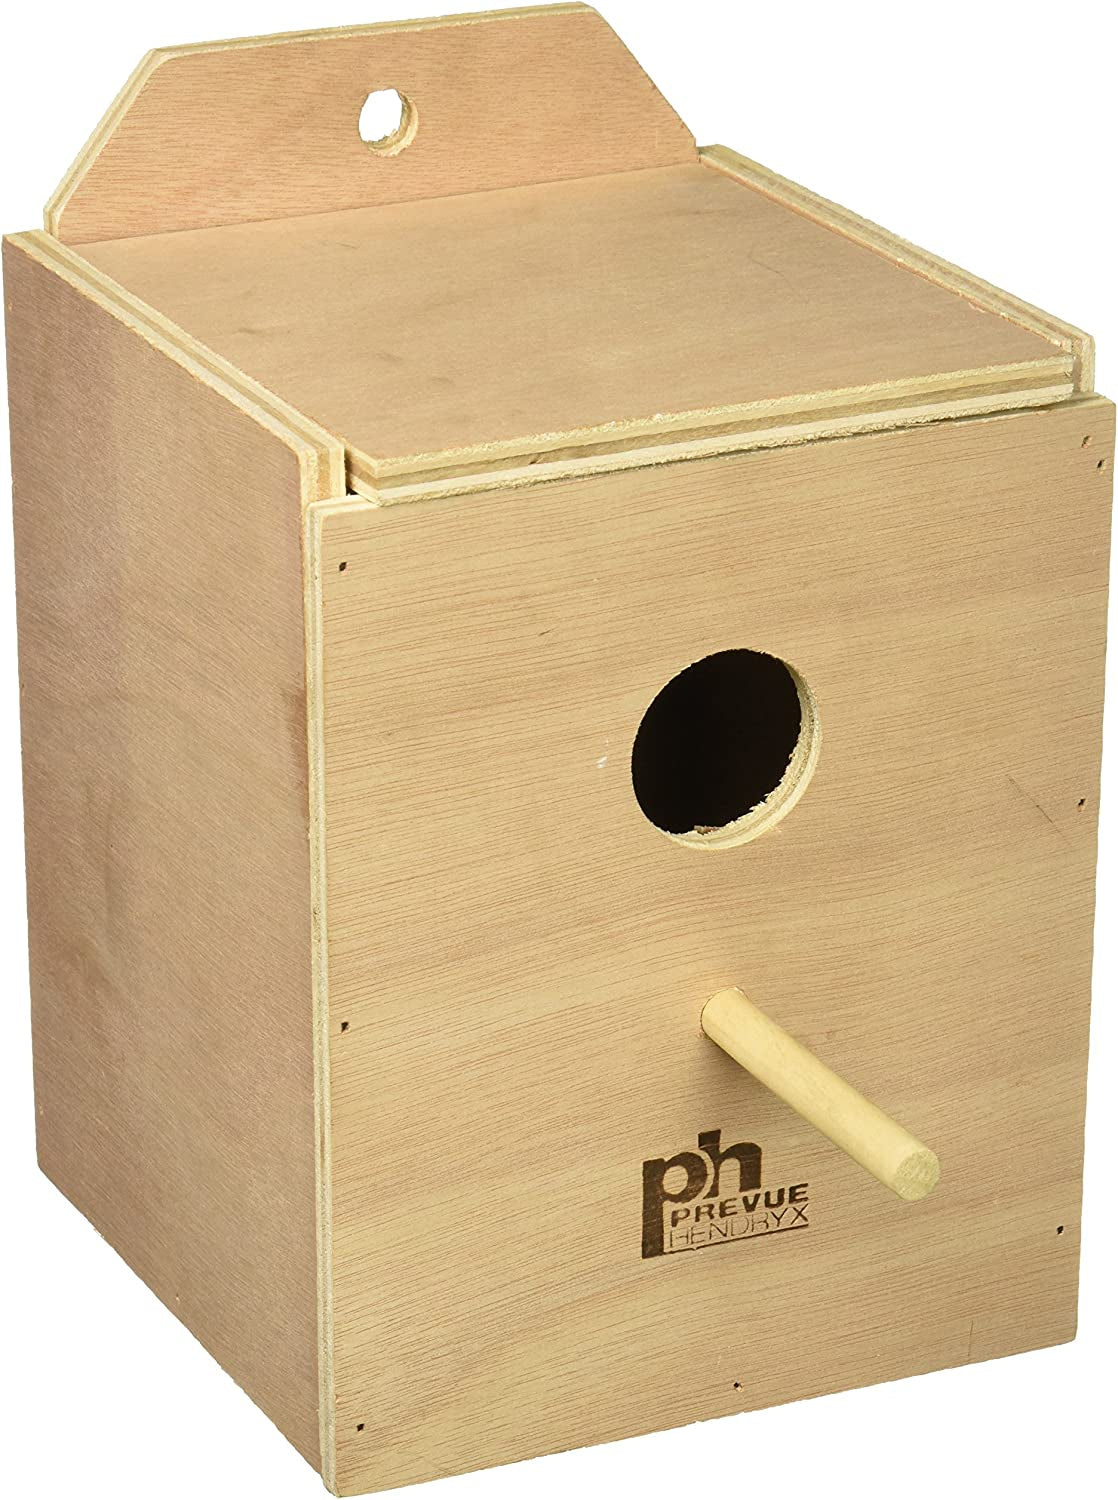 4 count Prevue Hardwood Lovebird Nest Box